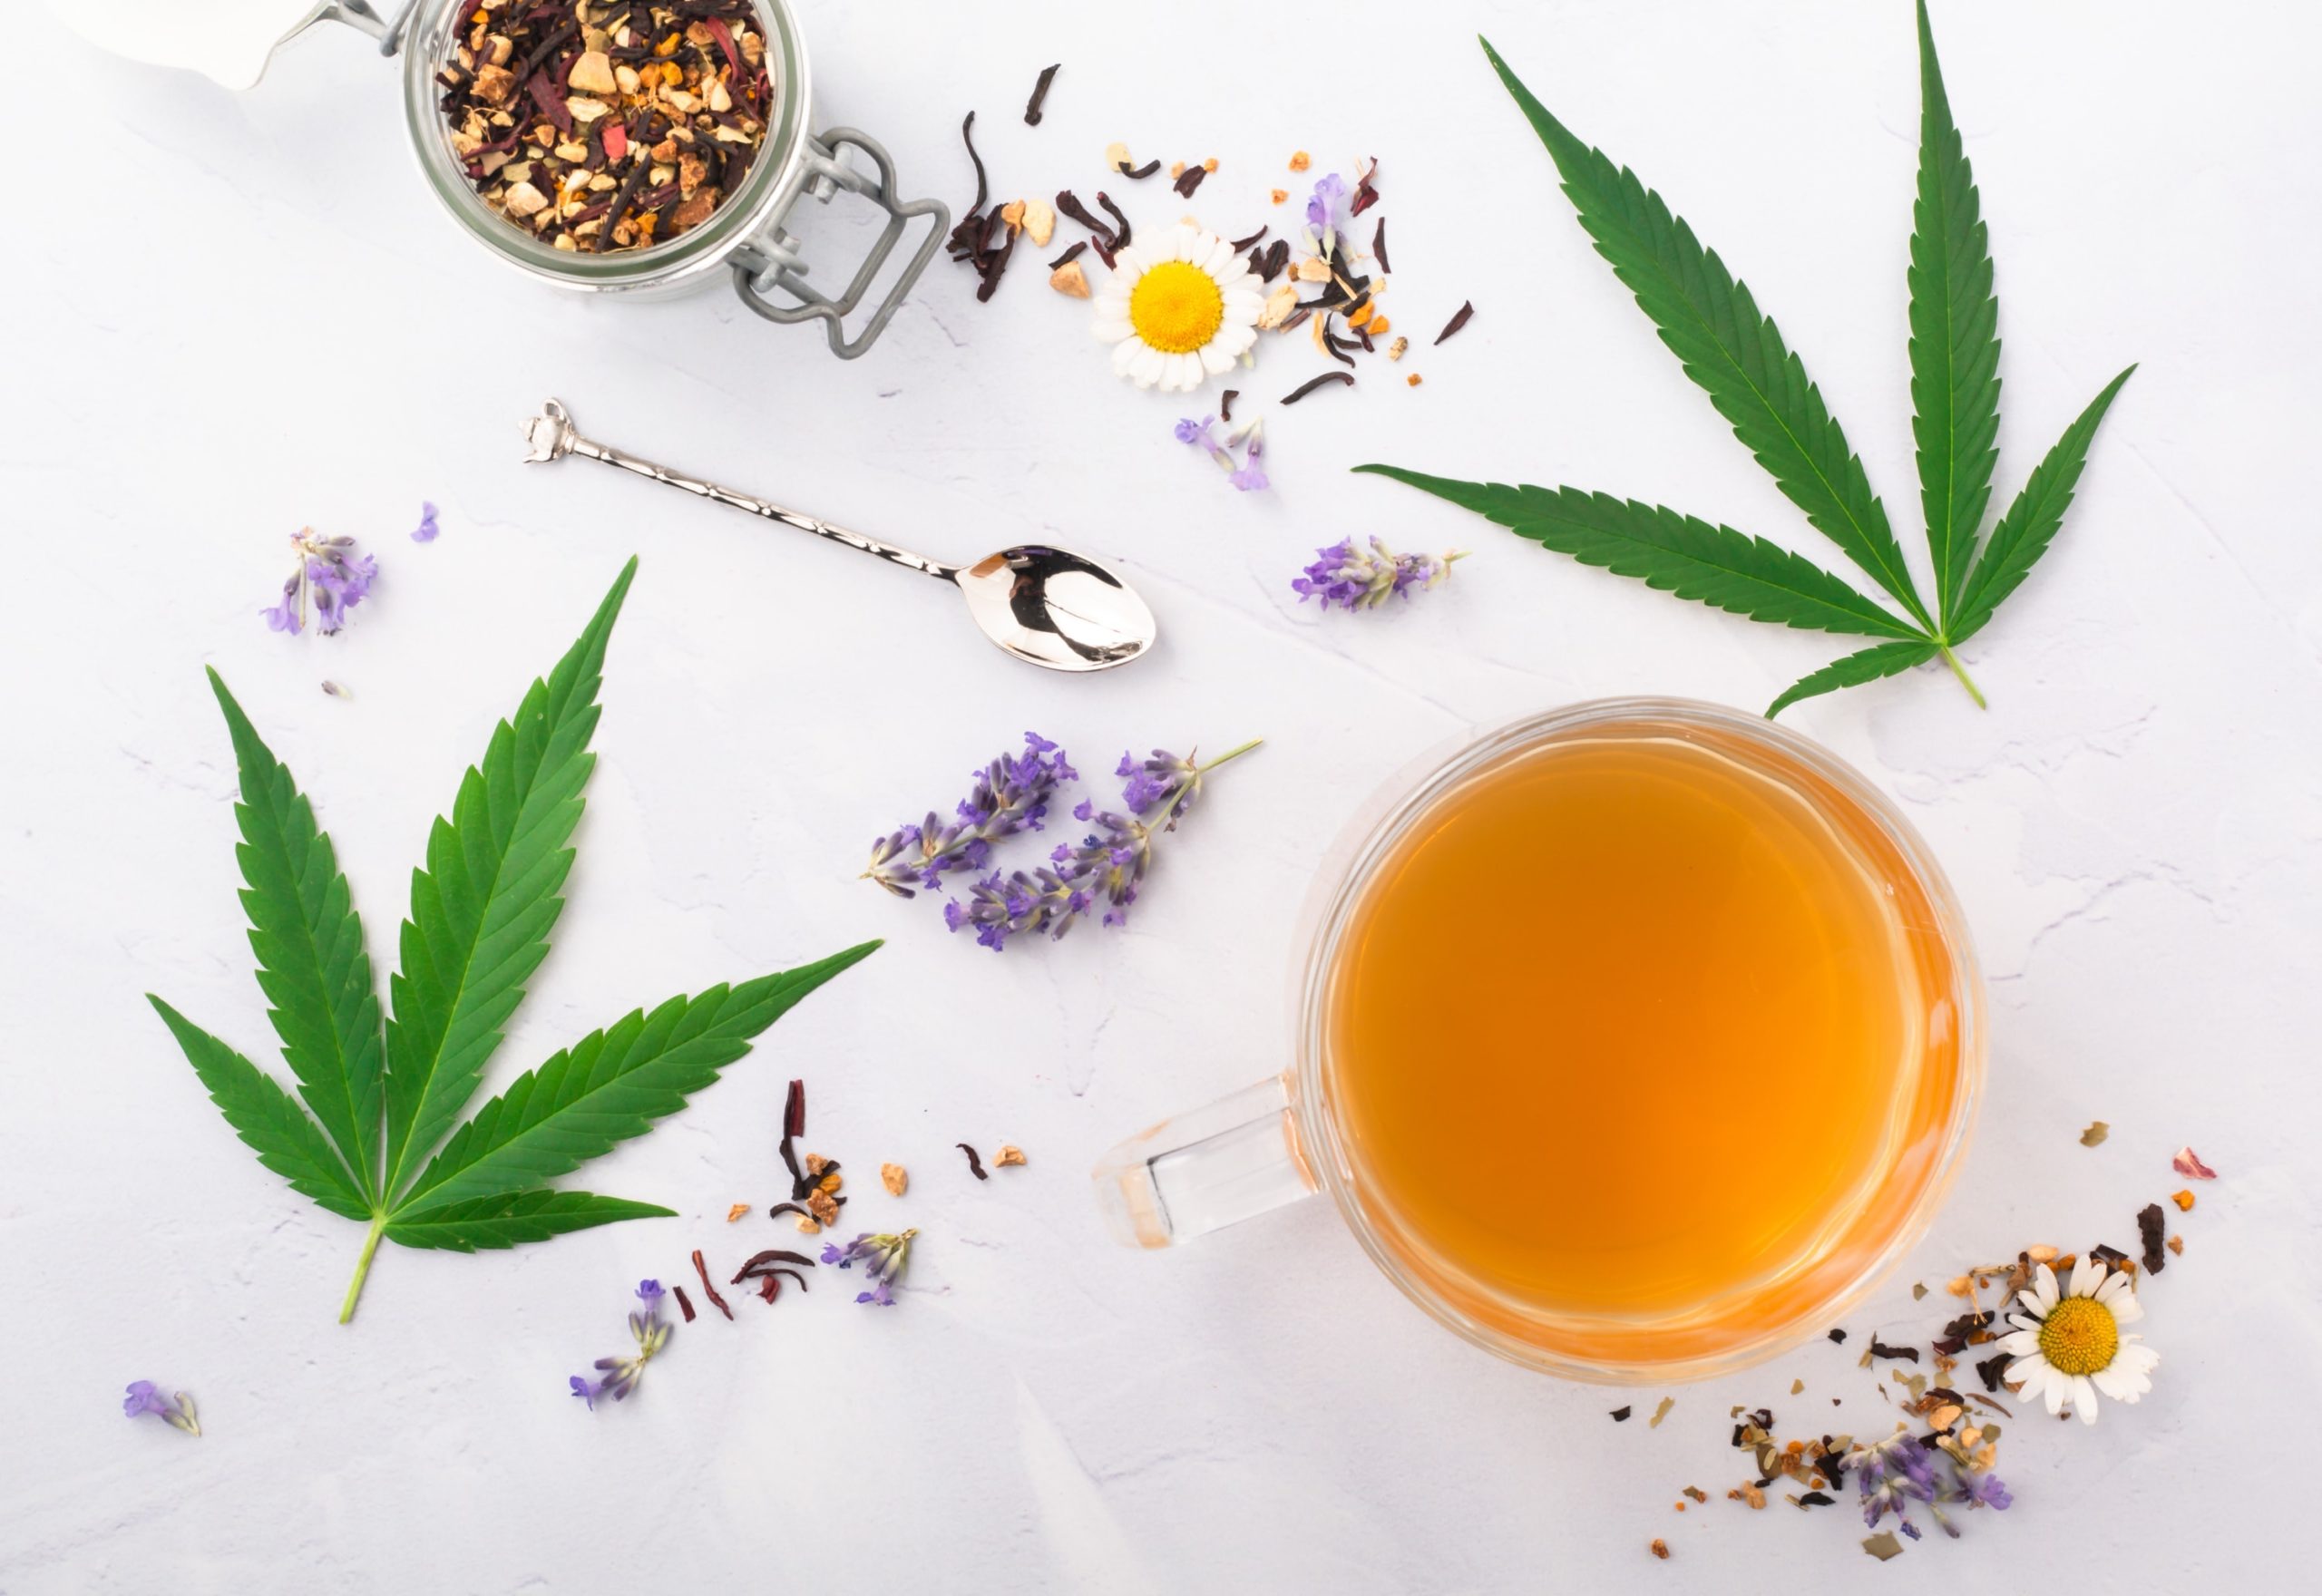 cannabis, tea and lavender